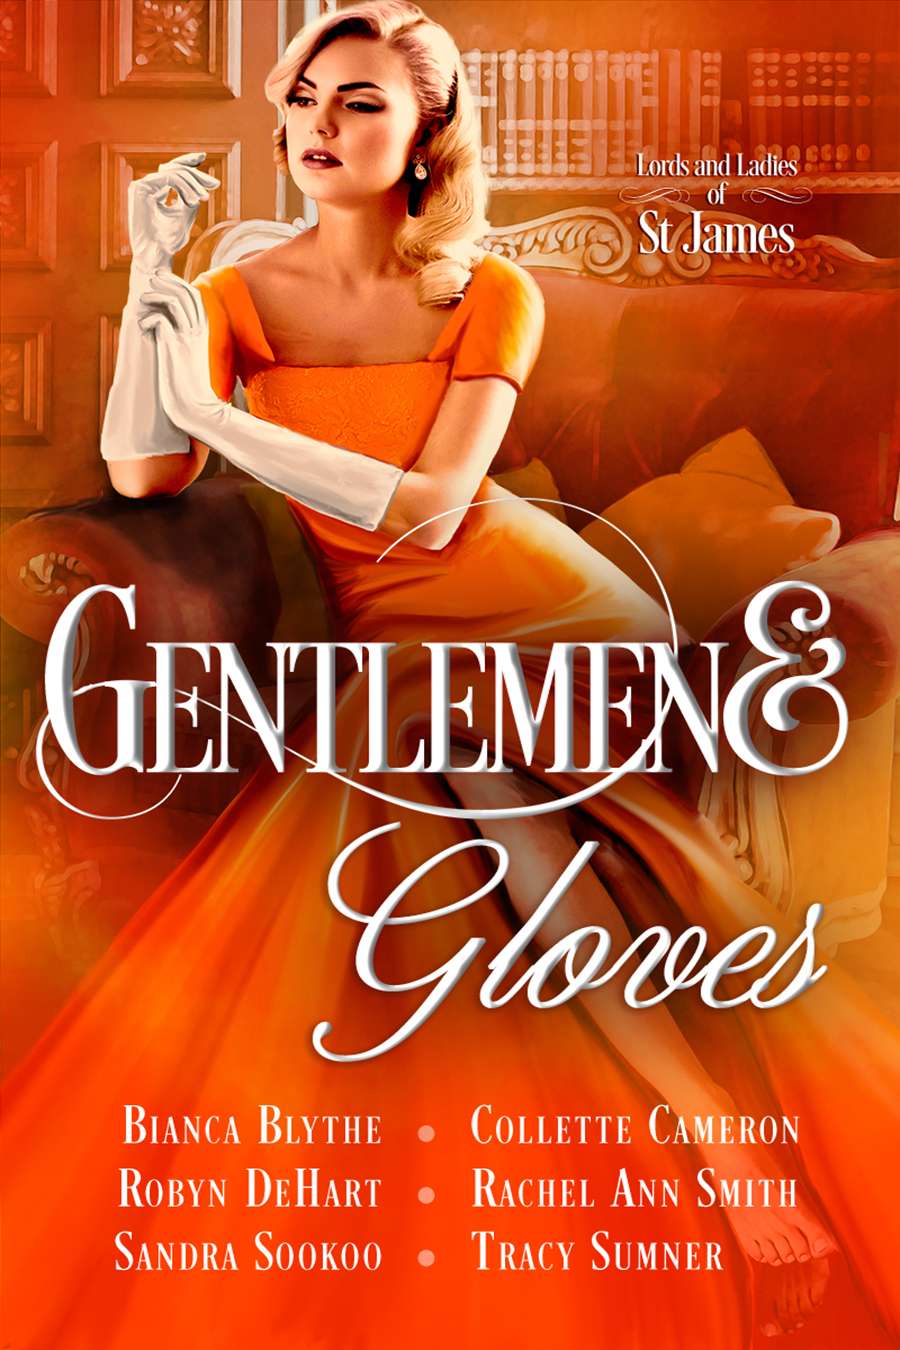 Gentlemen and Gloves 44